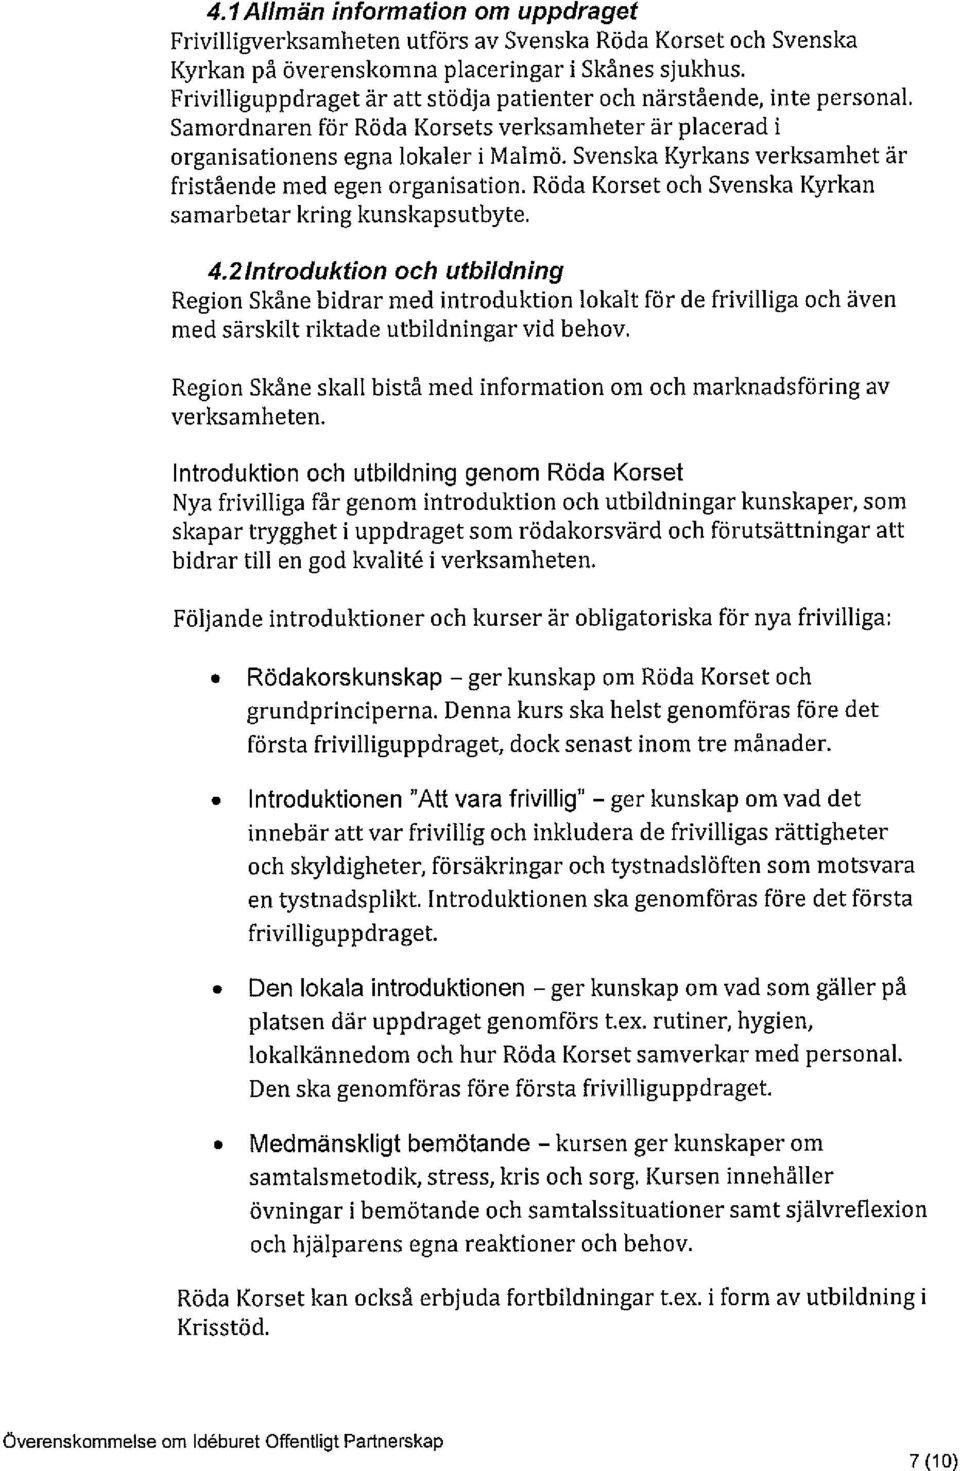 Svenska Kyrkans verksamhet är fristående med egen organisation. Röda Korset och Svenska Kyrkan samarbetar kring kunskapsutbyte. 4.